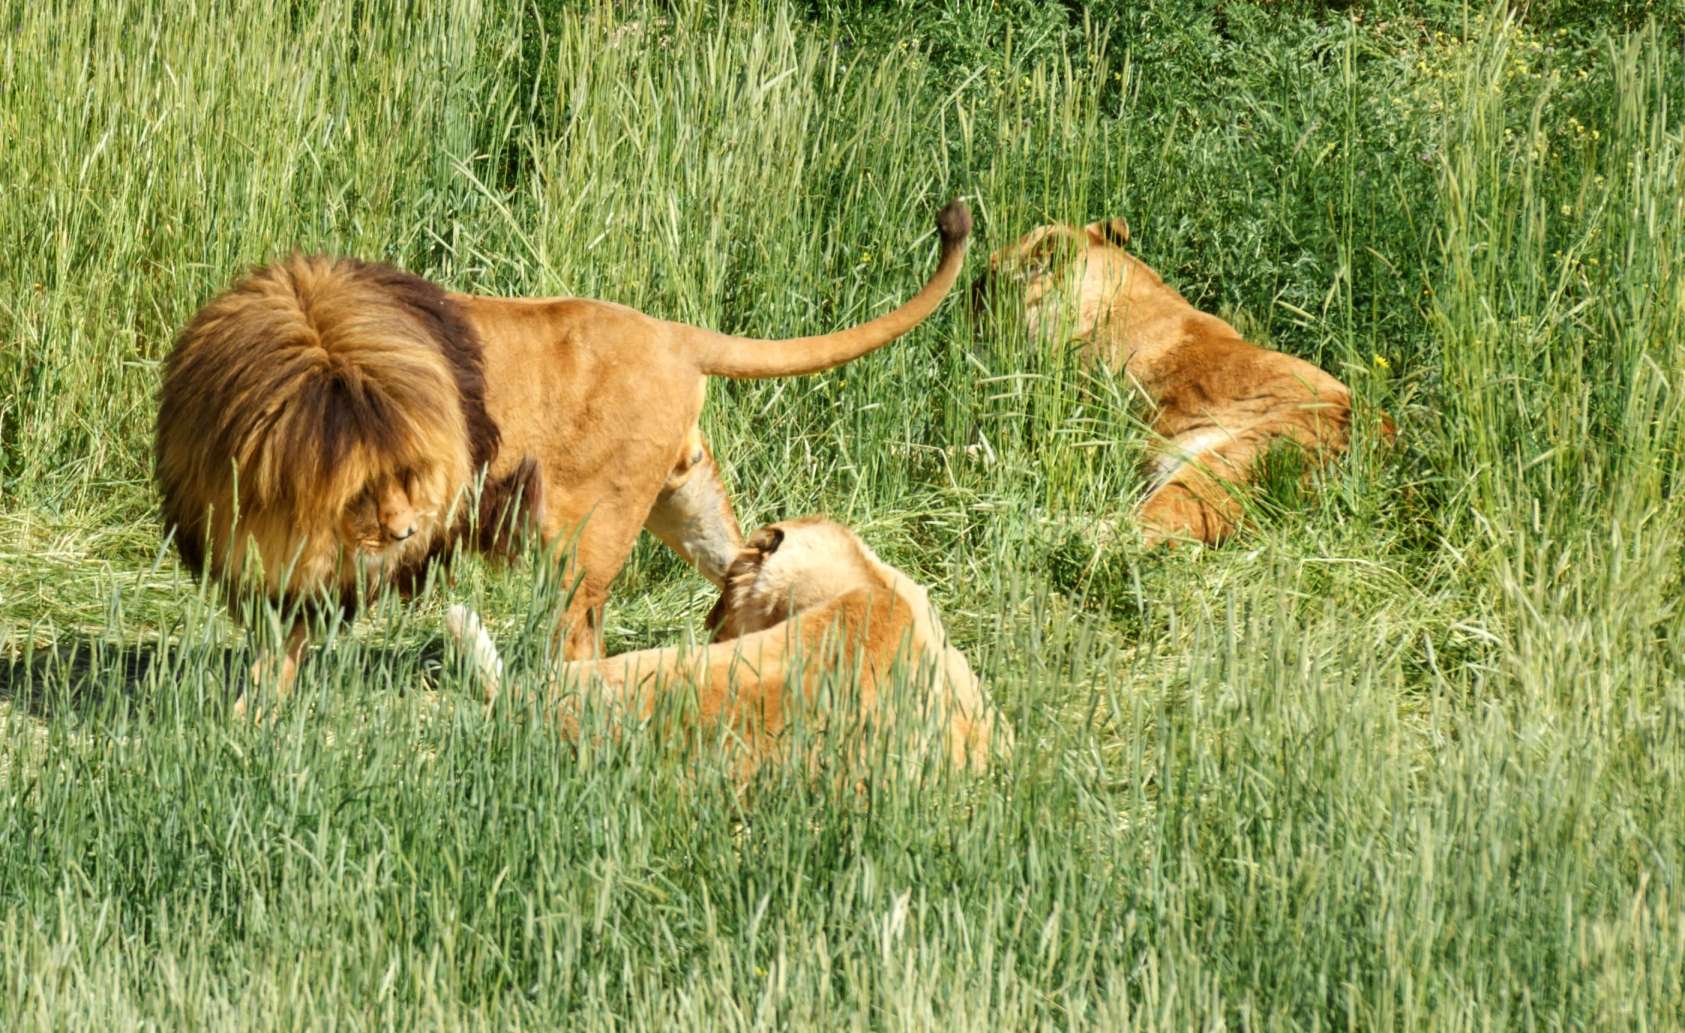 Lions in Grassland habitat